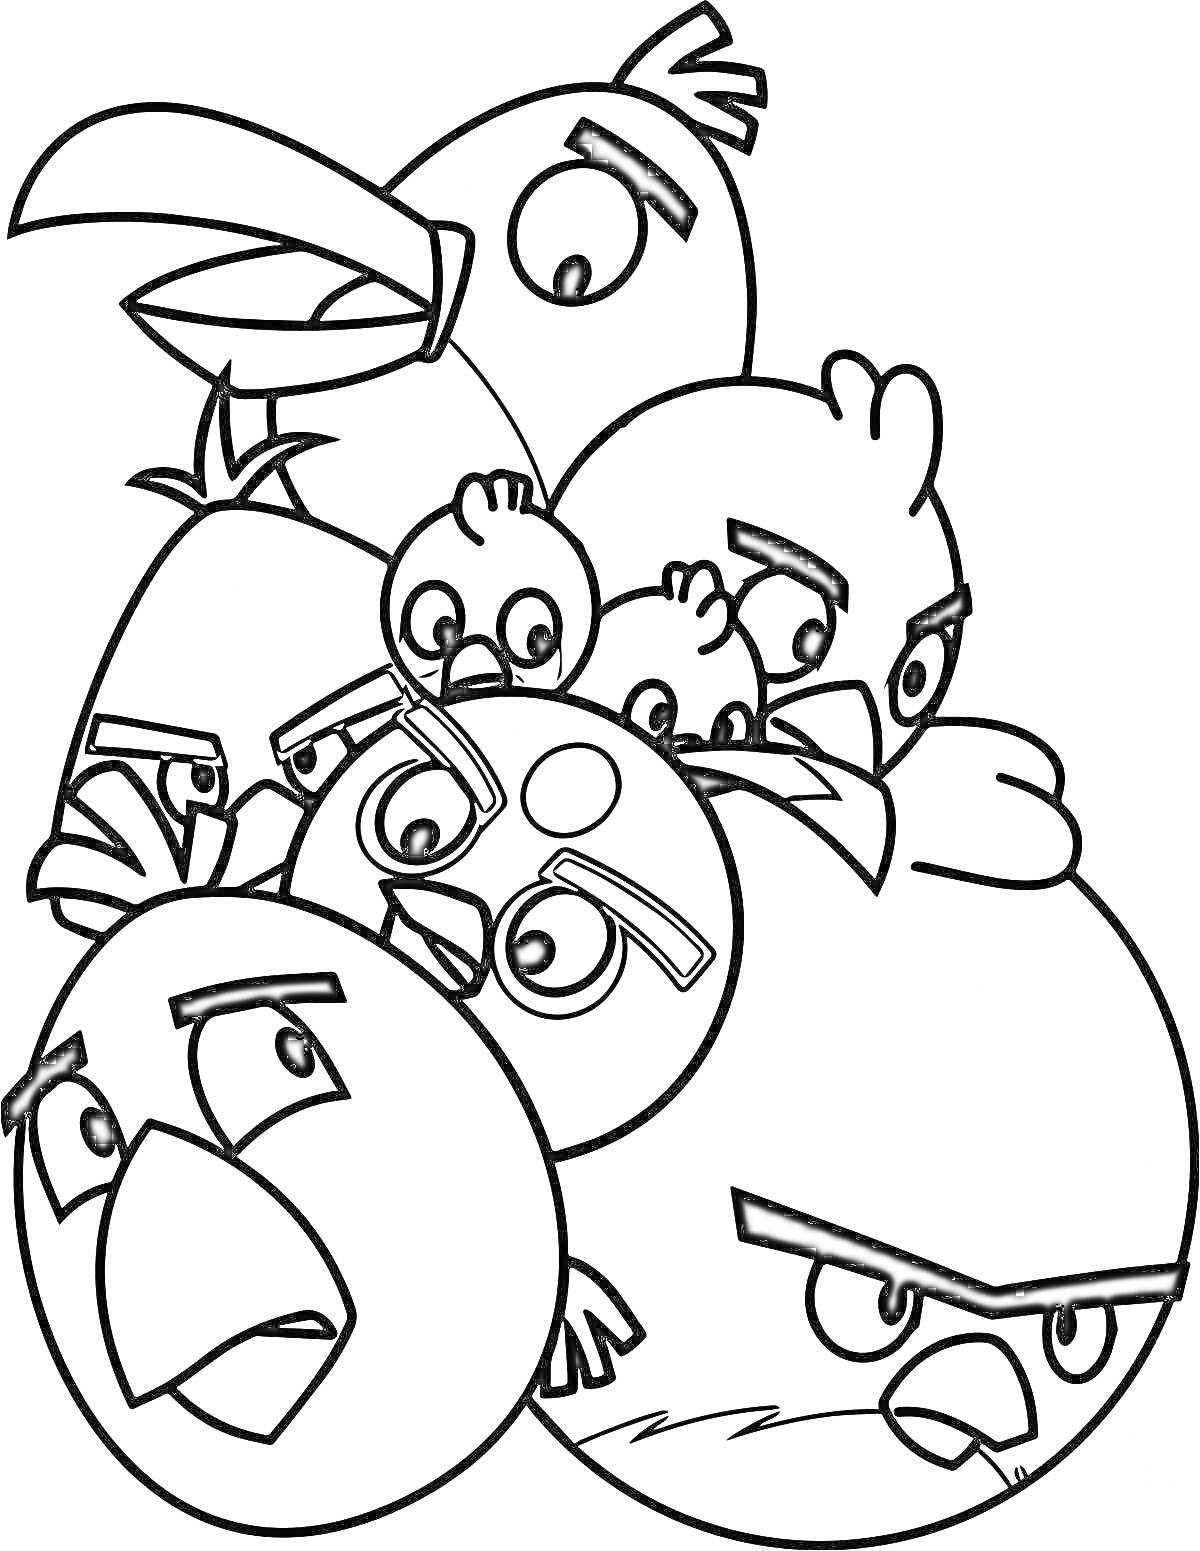 Раскраска Группа злых птиц с различными выражениями лиц и позами